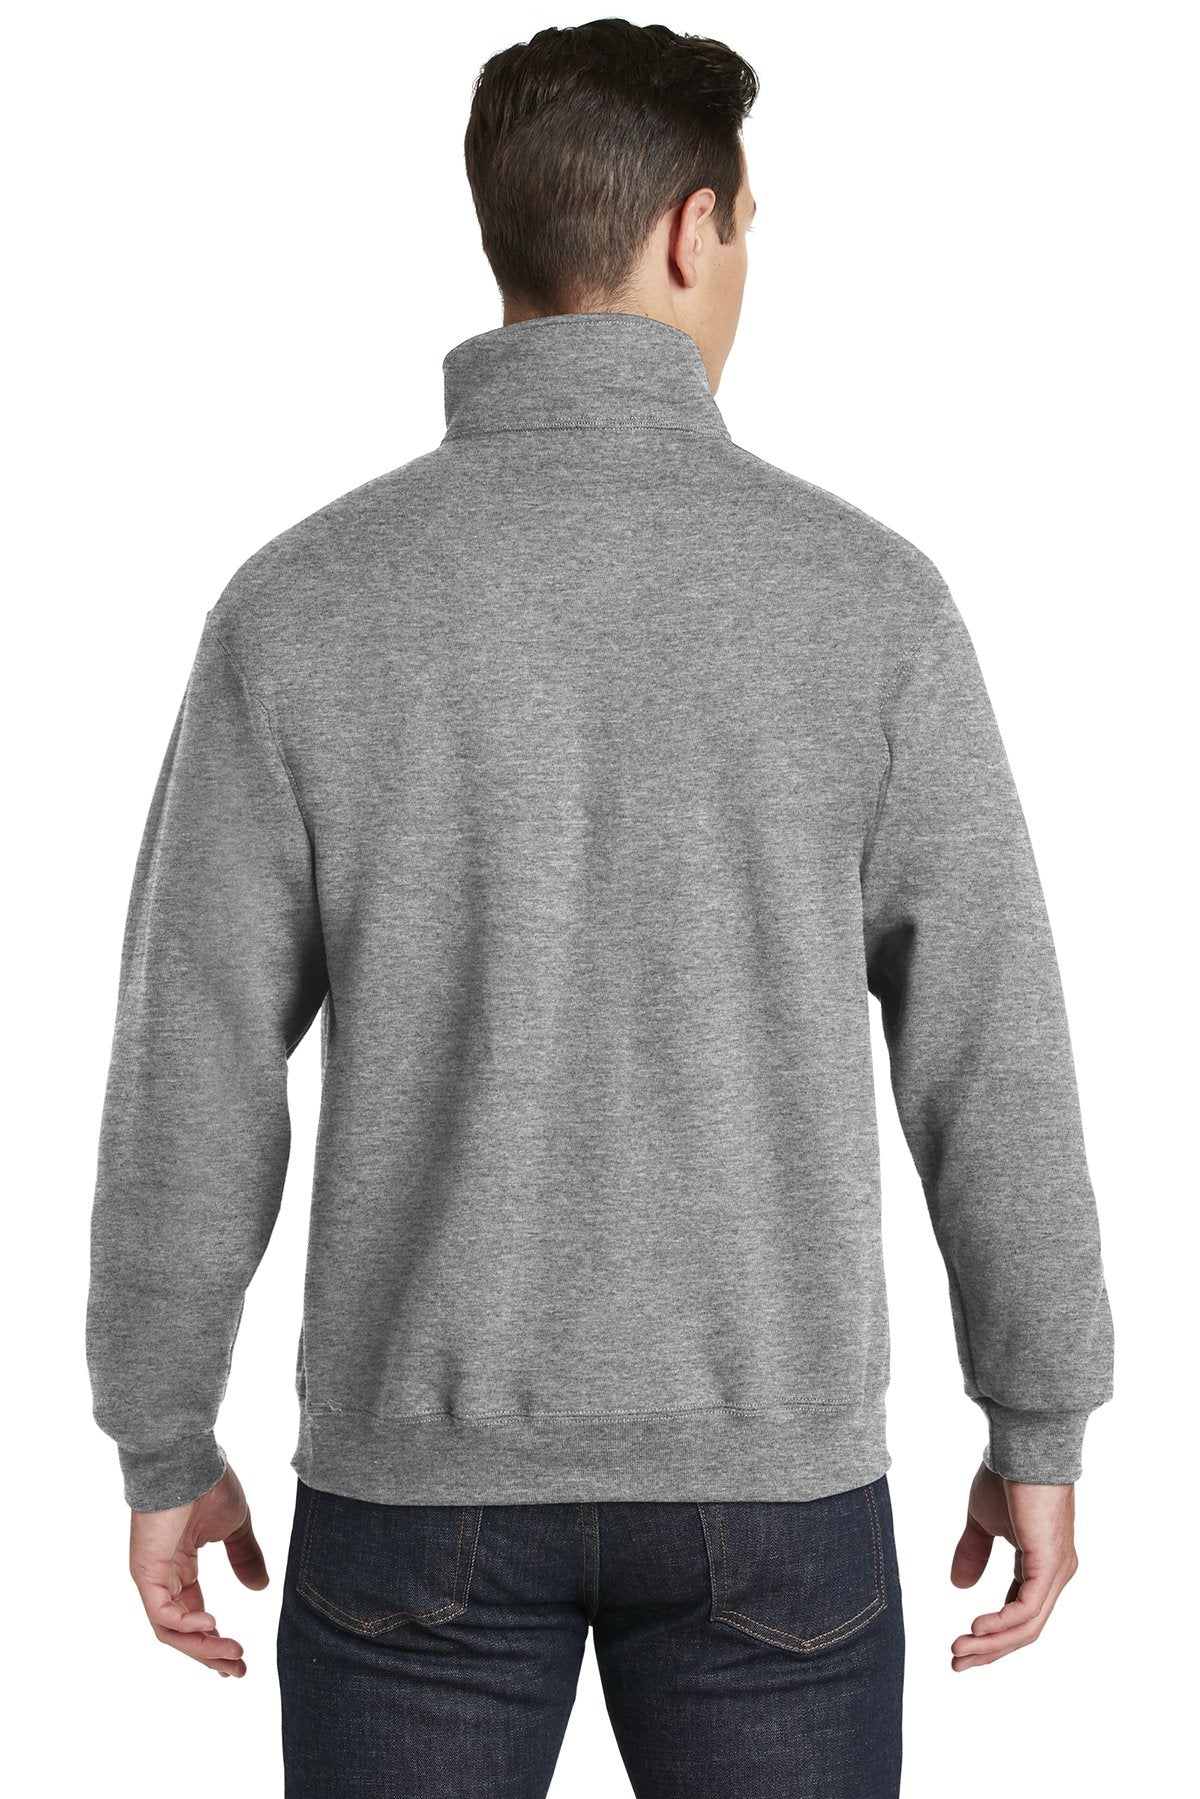 Jerzees Super Sweats NuBlend 1/4-Zip Sweatshirt with Cadet Collar 4528M Oxford